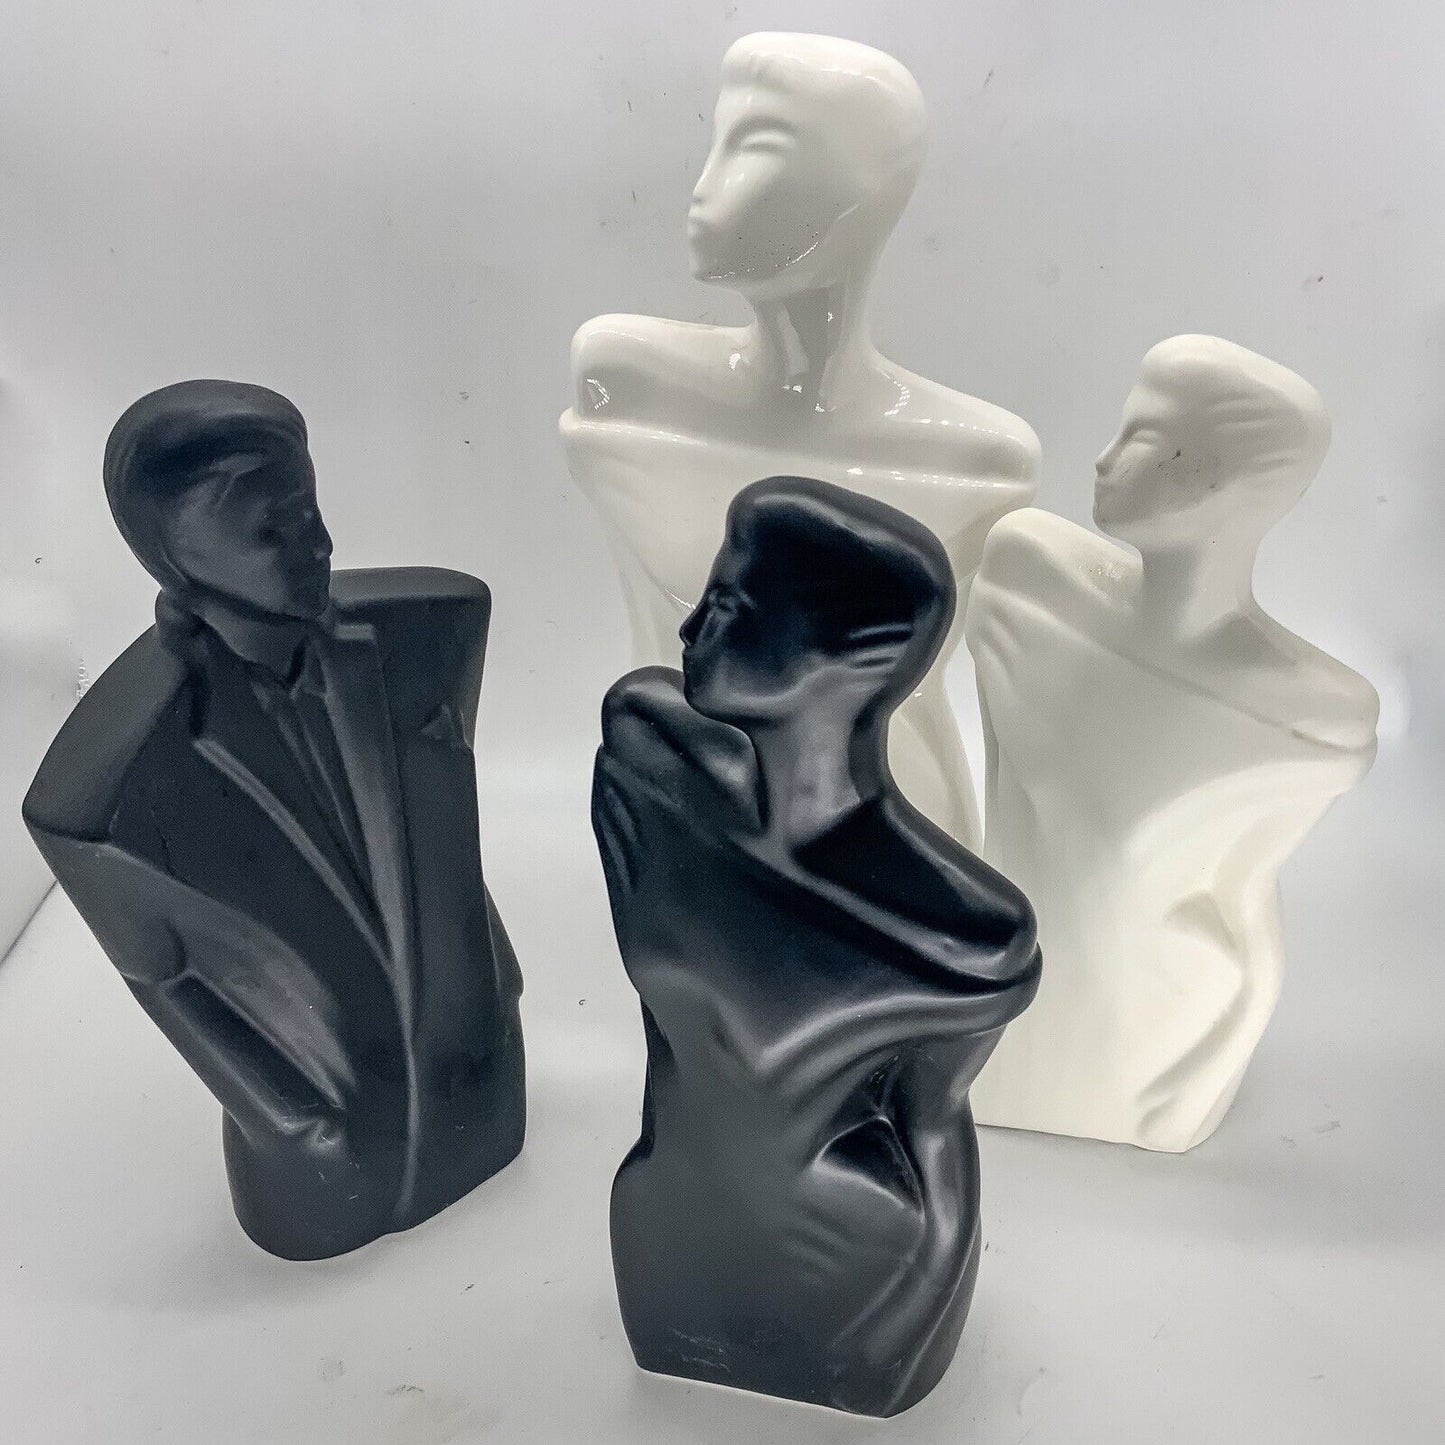 80s Art Deco Revival Pair Of Ceramic Figures 27cm